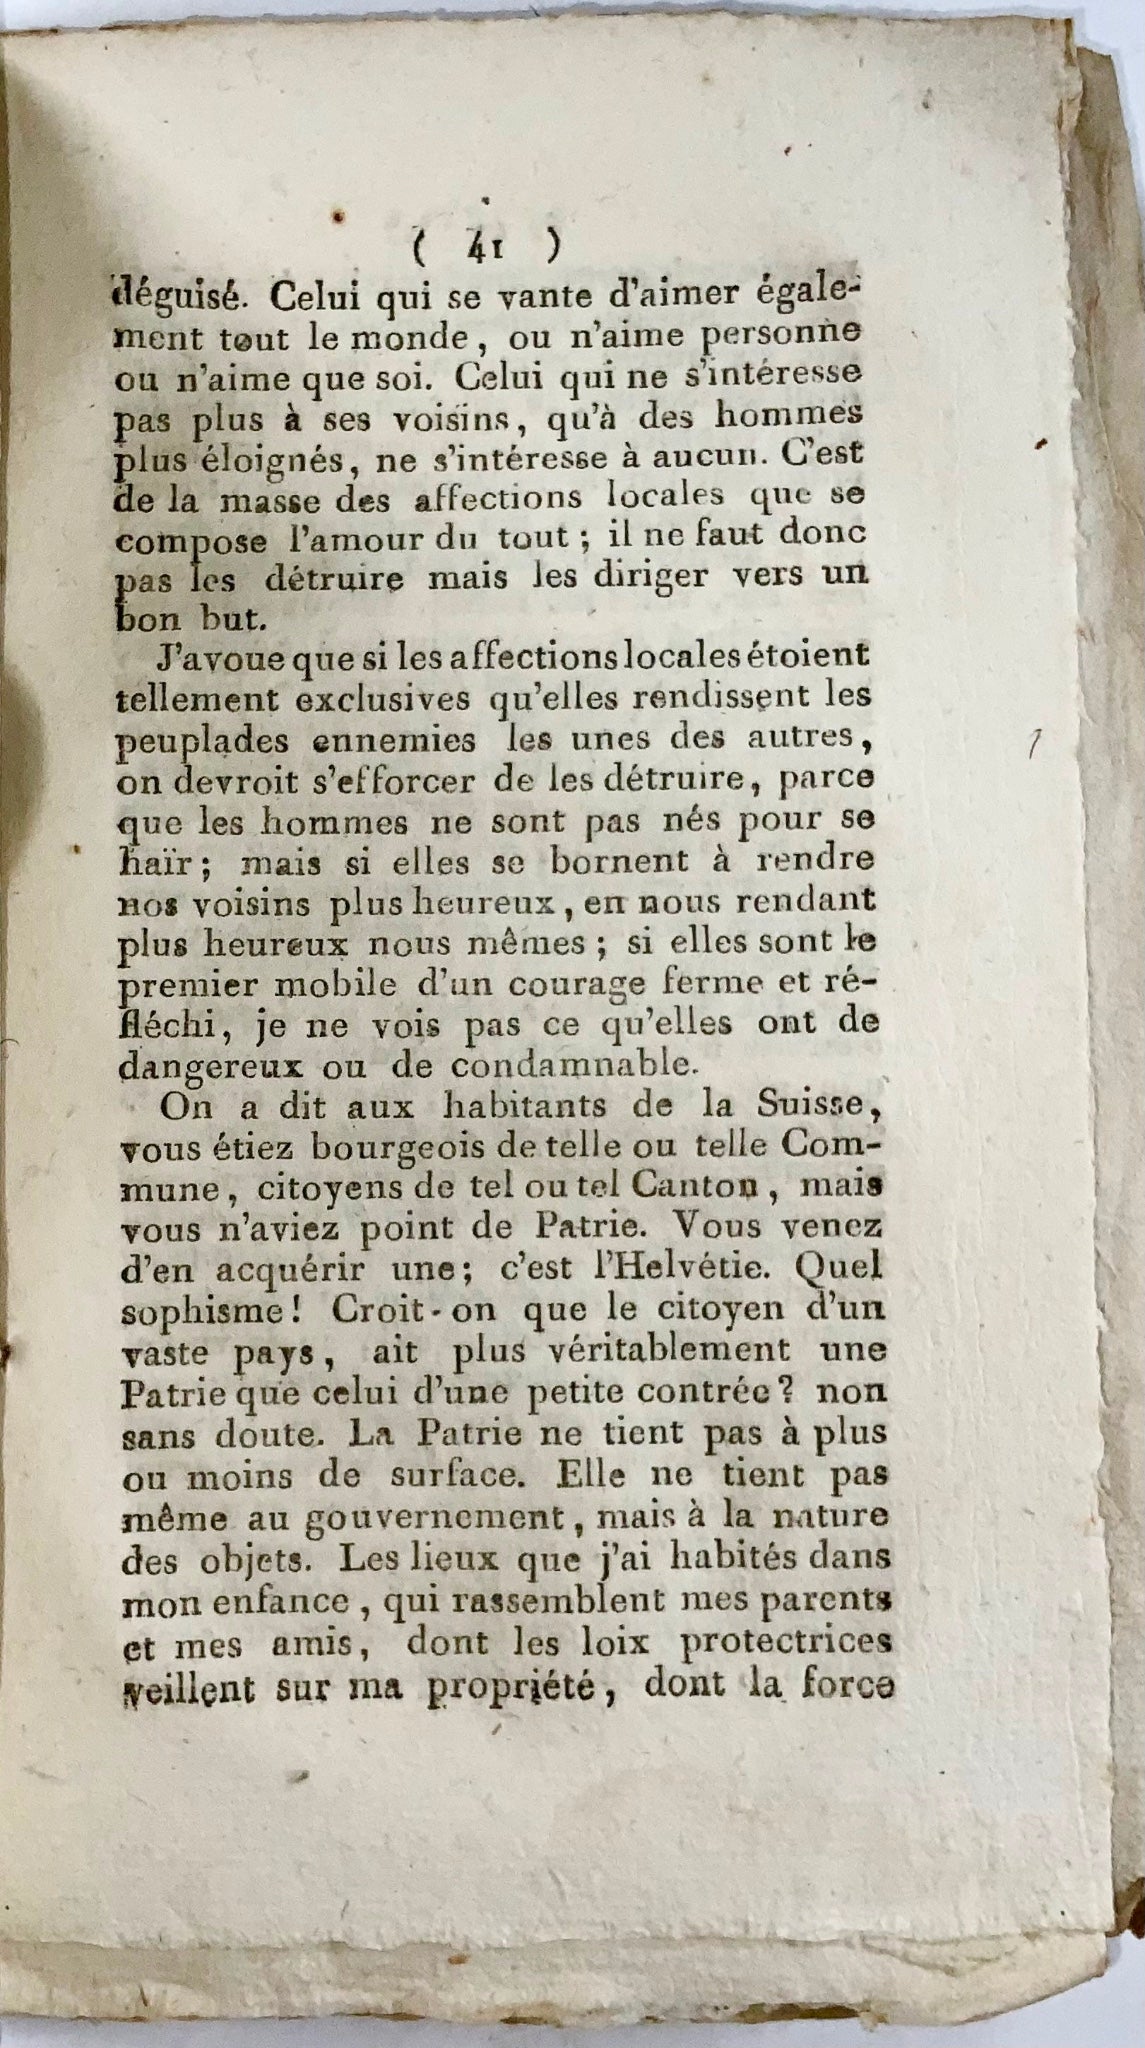 1800 Bridel, ouvrage rare sur la Révolution en Suisse et la nouvelle Constitution